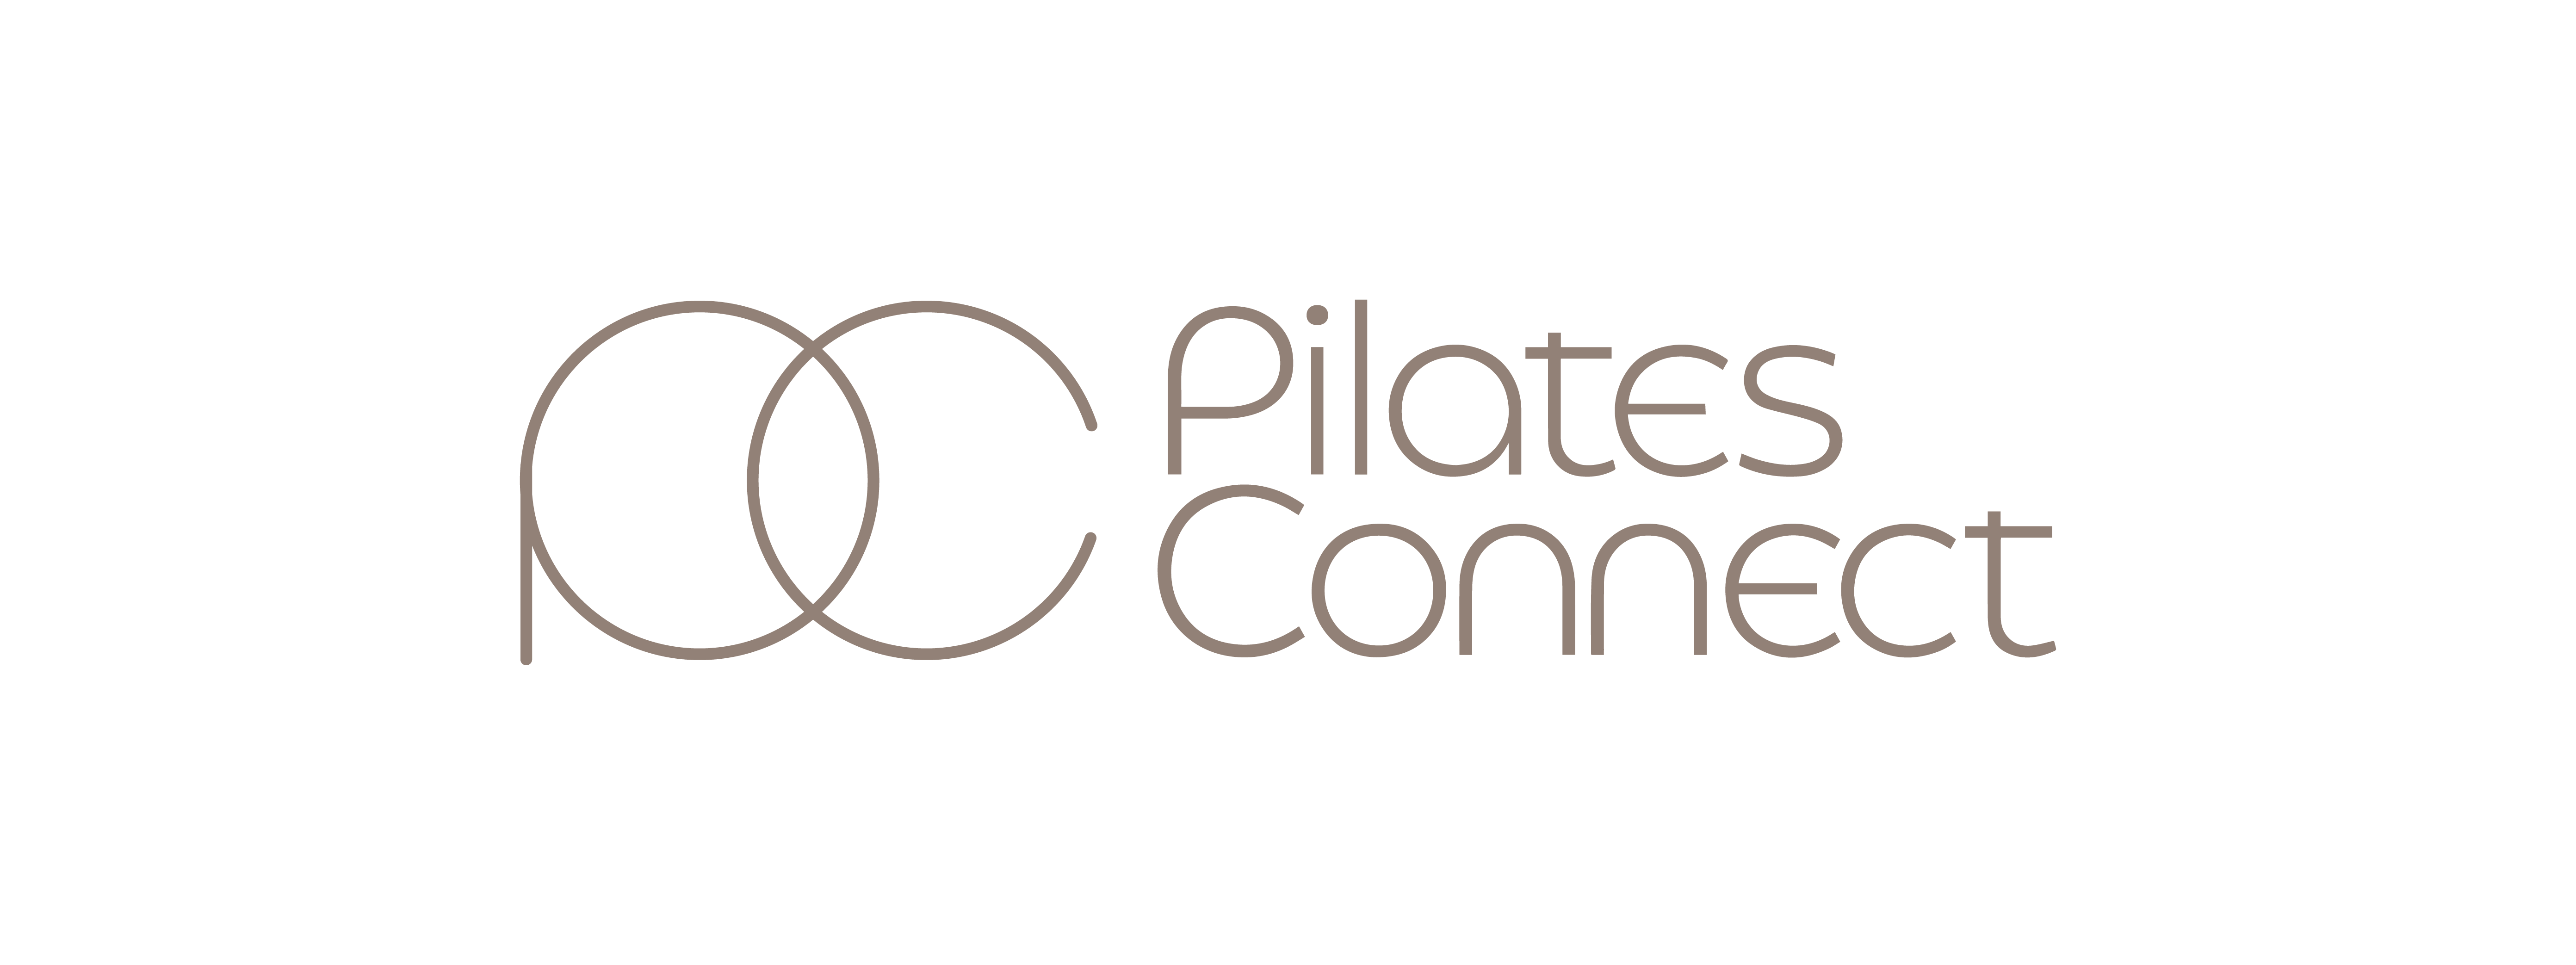 Pilates Connect Pte. Ltd. logo